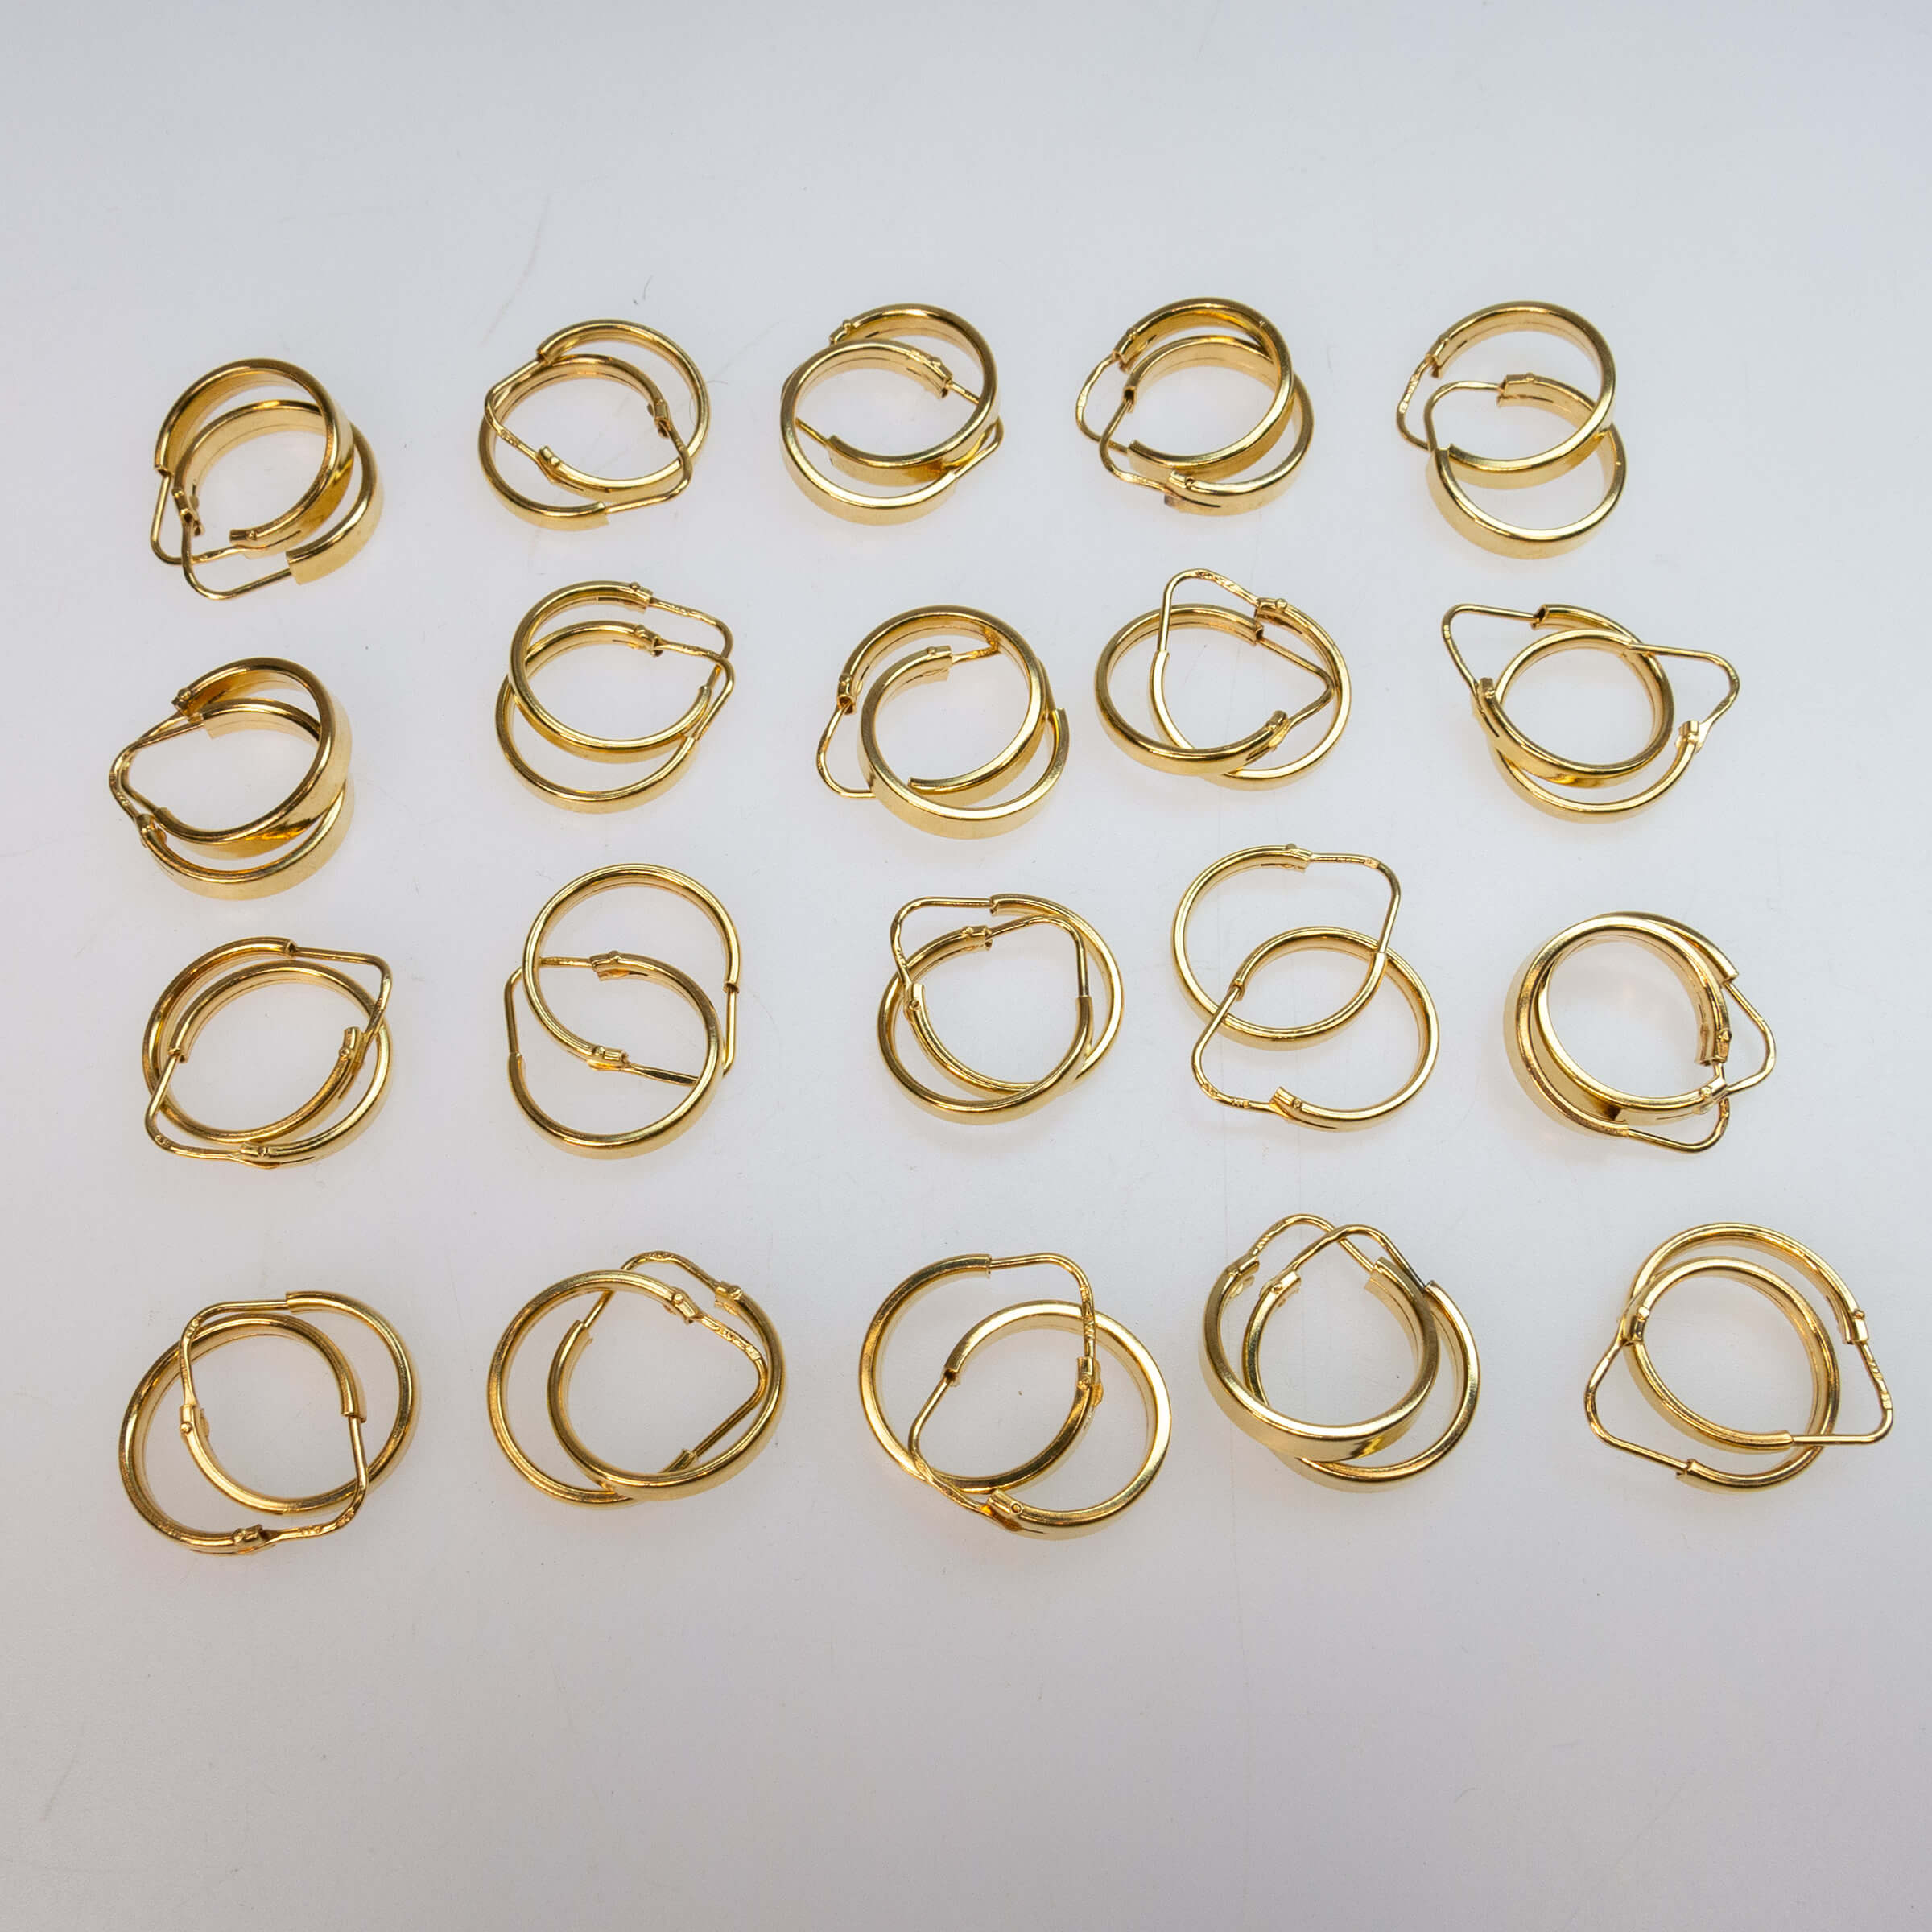 20 Pairs Of 18k Yellow Gold Hoop Earrings